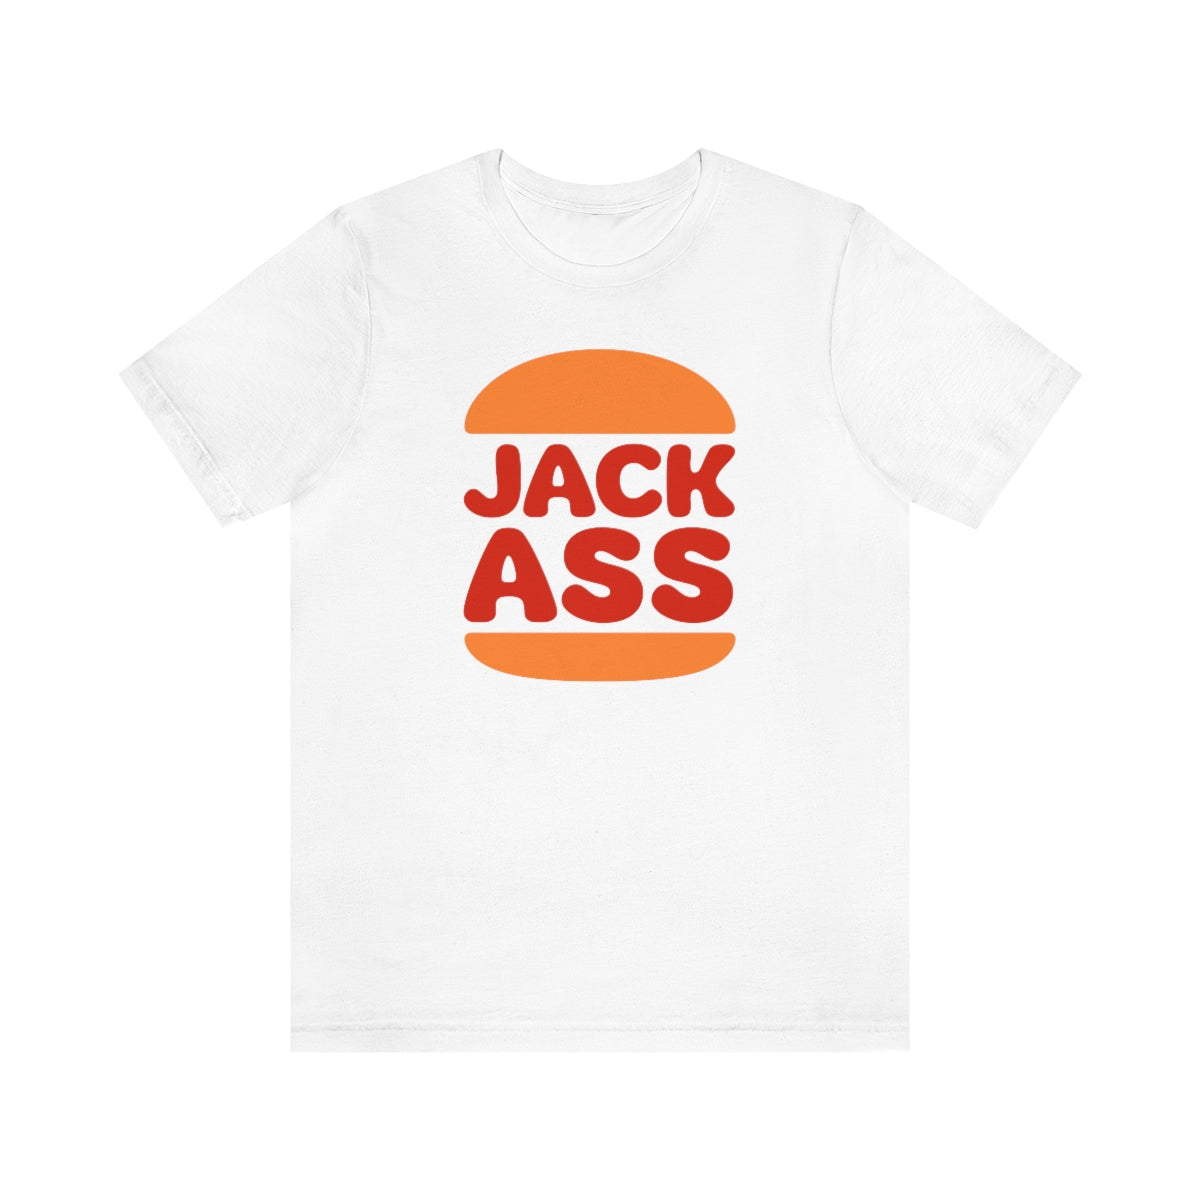 Jackass T-Shirt